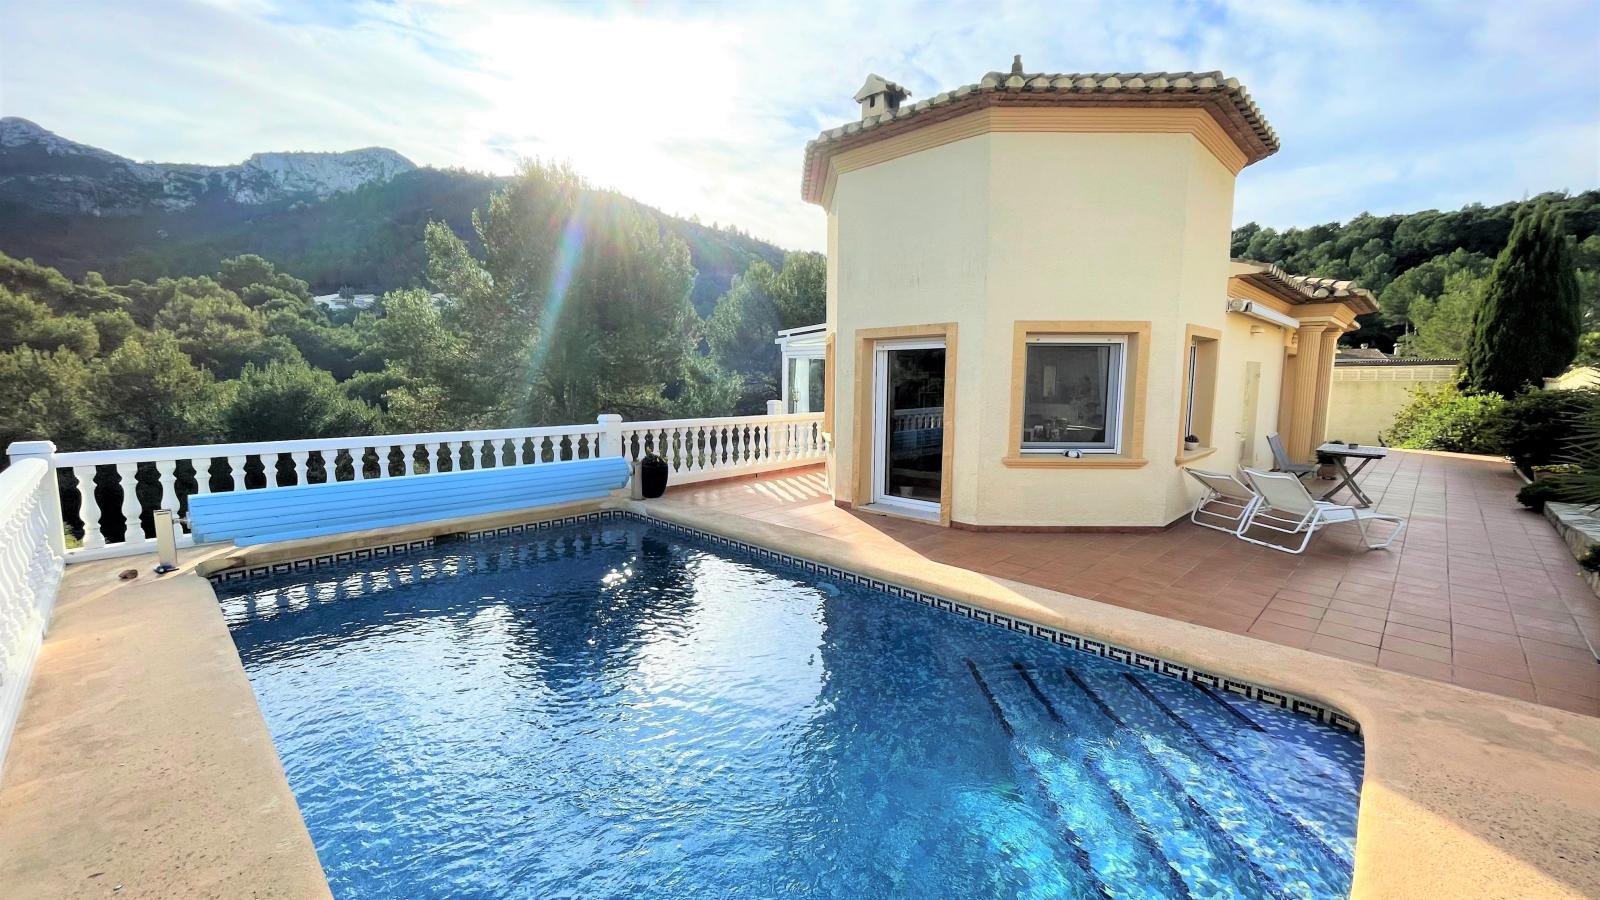 Magnifique villa avec vue sur la mer dans un endroit privilégié, avec chauffage au sol, piscine, carport, jardin d'hiver et bien plus encore !